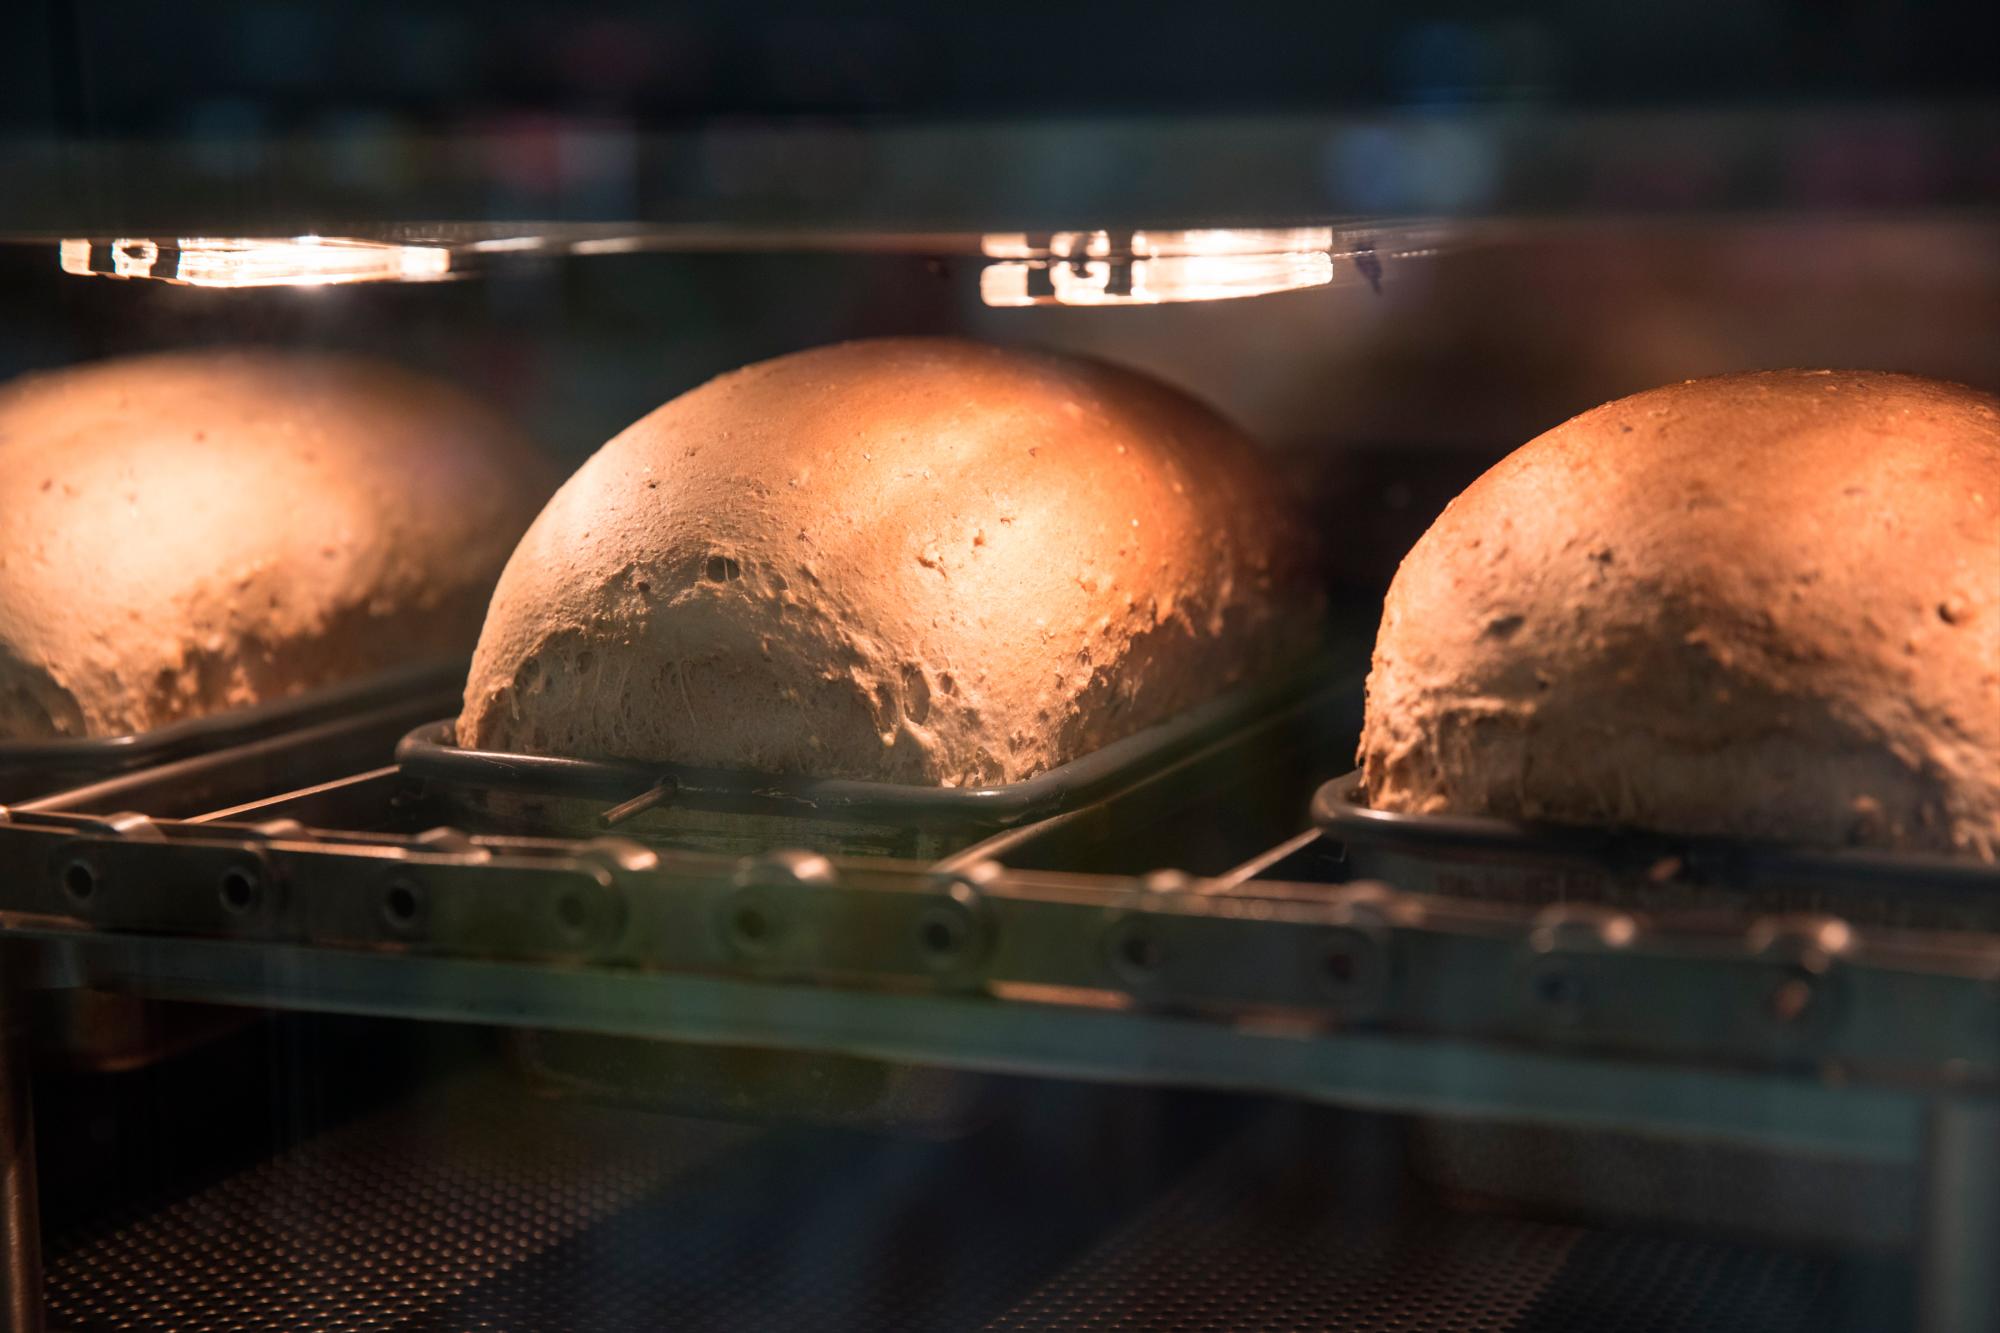 Detalle del proceso de fabricación del pan, totalmente transparente en el robot. 